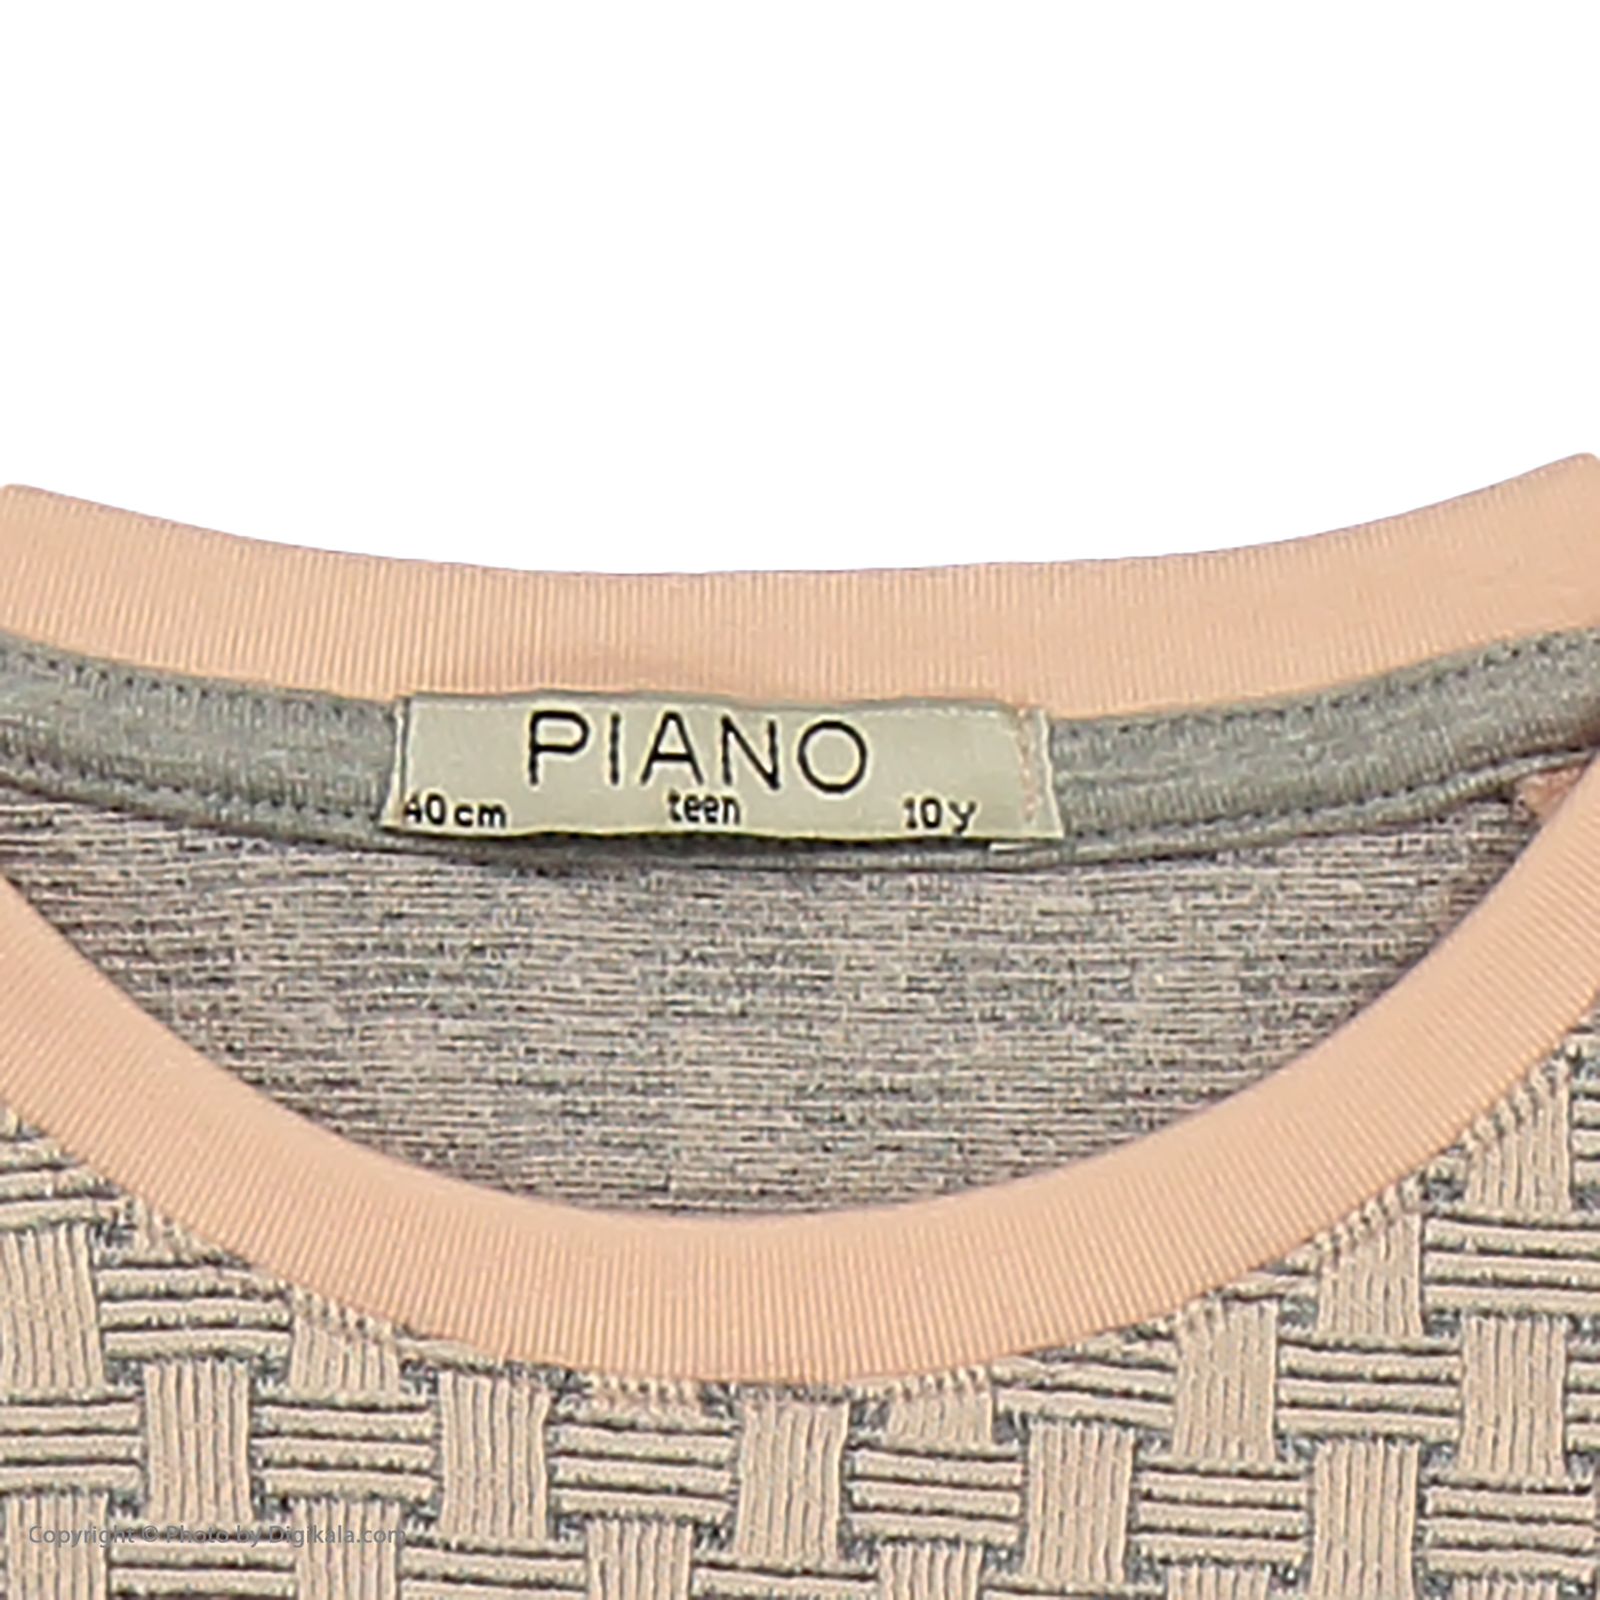 تی شرت دخترانه پیانو مدل 1009009901649-21 -  - 5